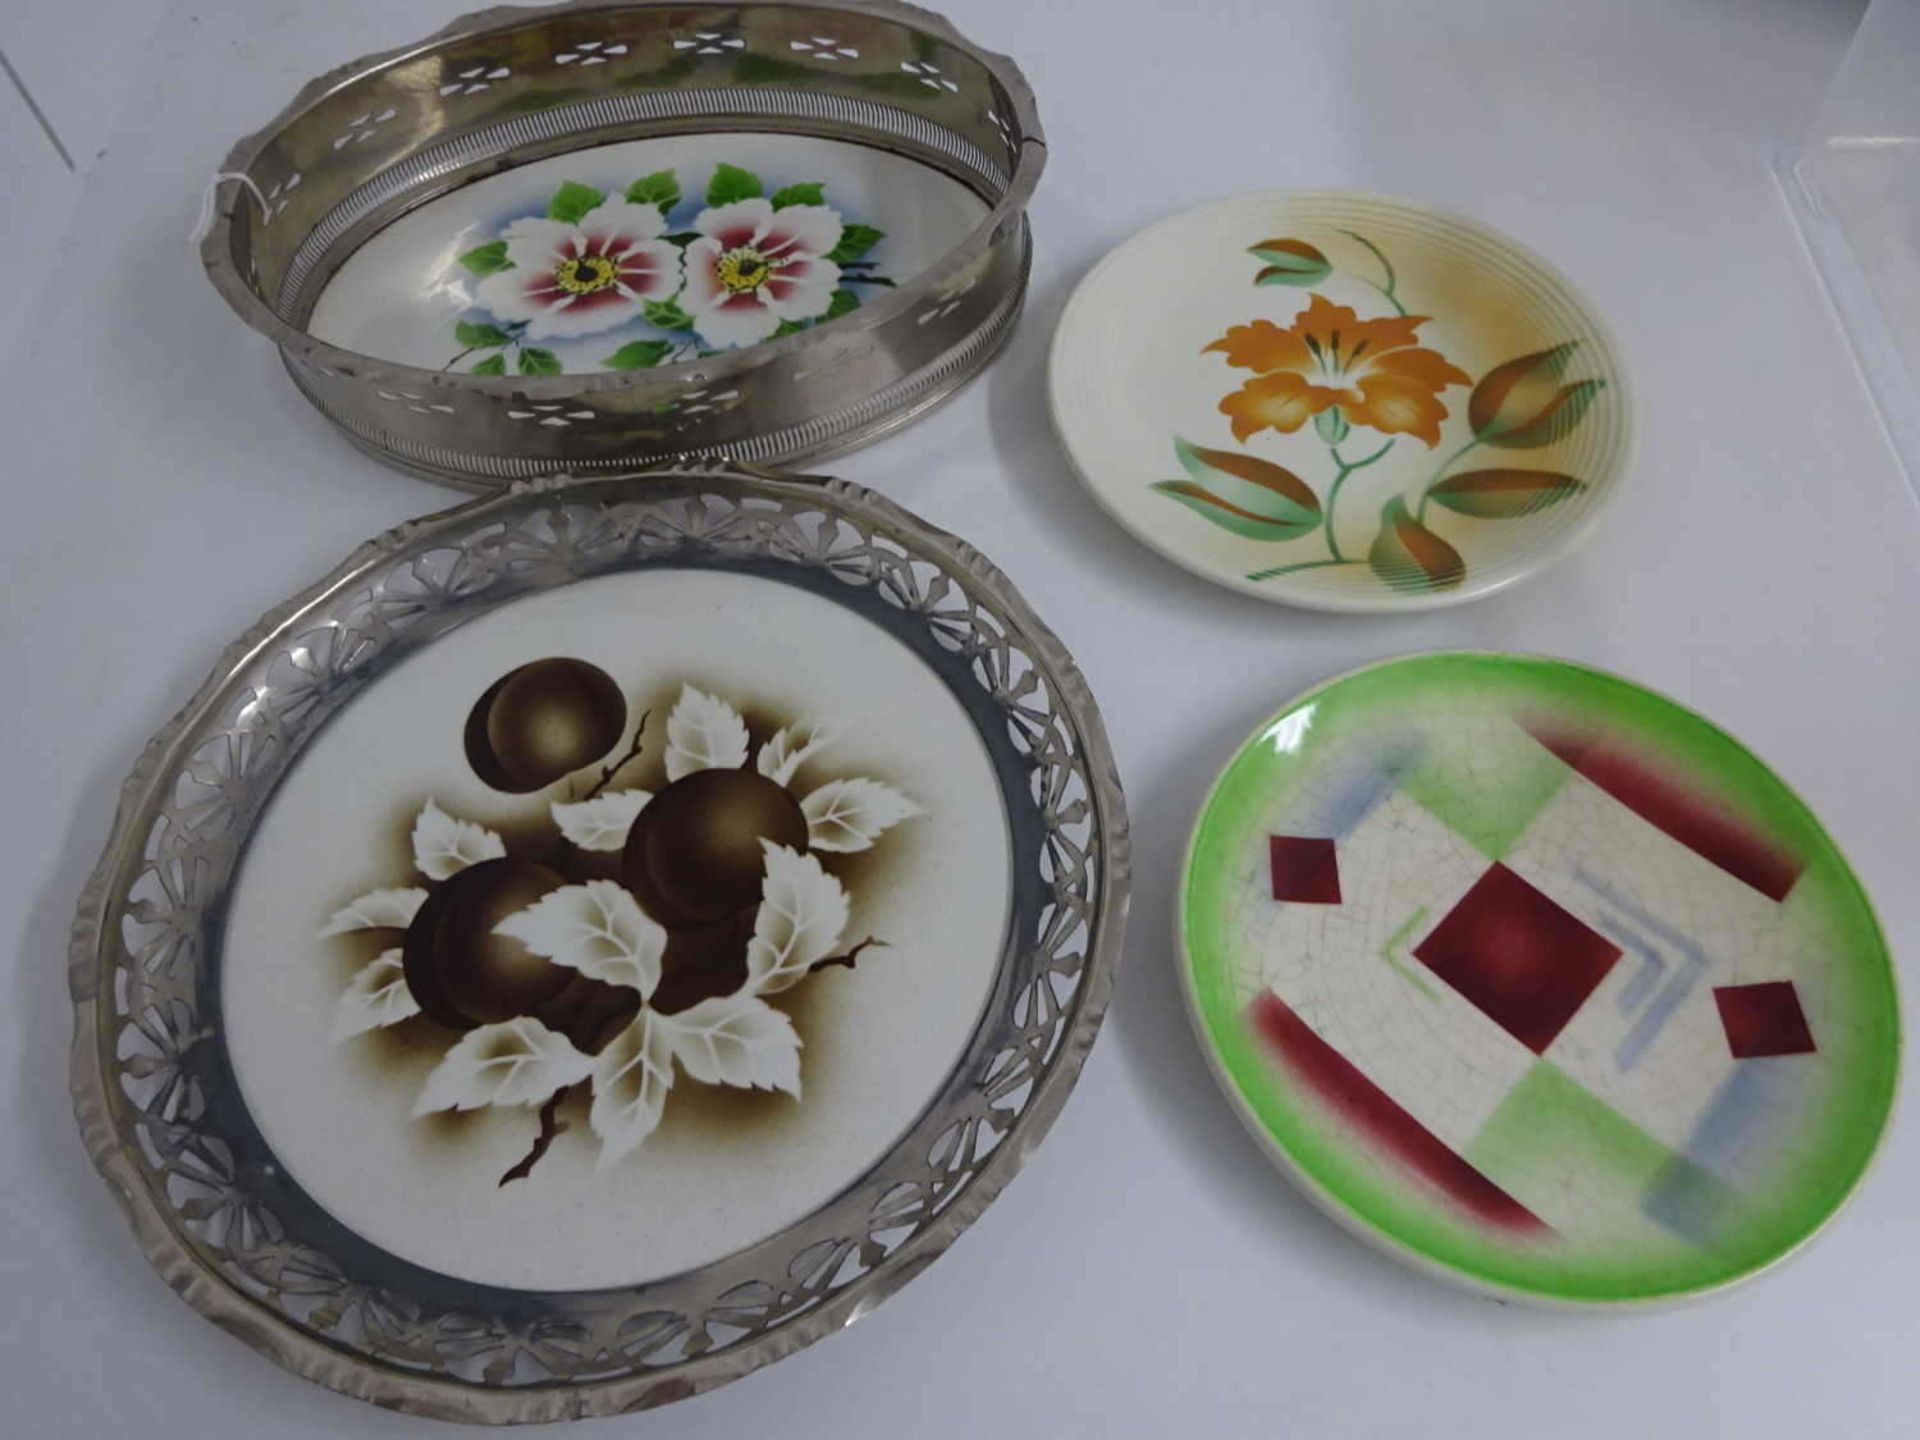 4 Teile Grünstadter Keramik, dabei 2 Dessertteller, durchmesser ca. 18 cm, sowie 2 Schalen mit